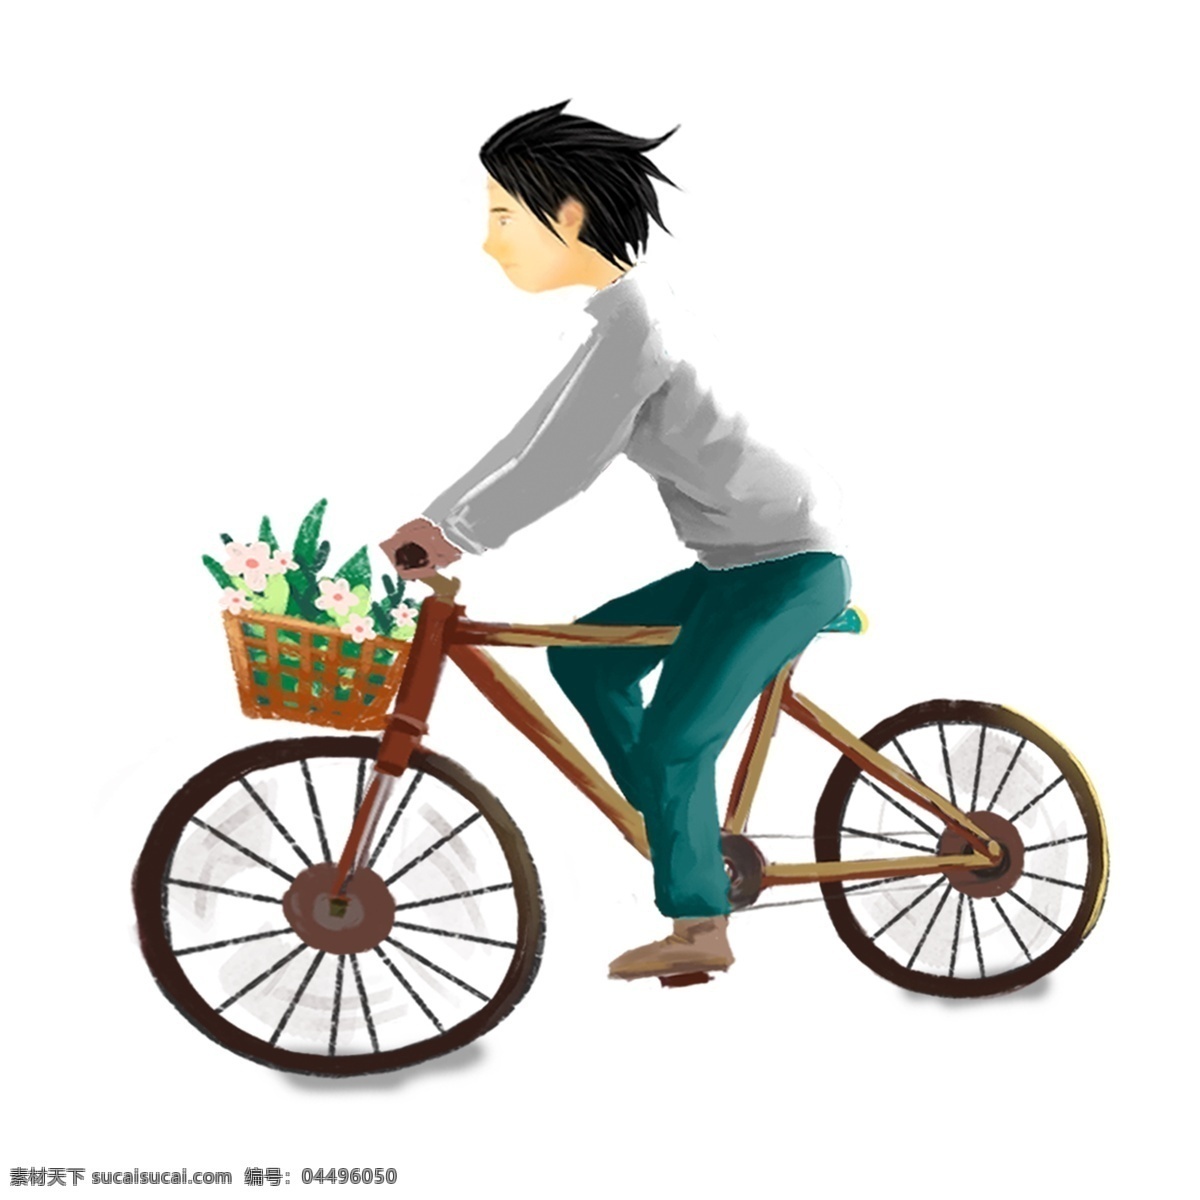 手绘 骑车 男孩 人物 元素 骑车的男孩 少年 人物插画 精致人物 手绘元素 卡通